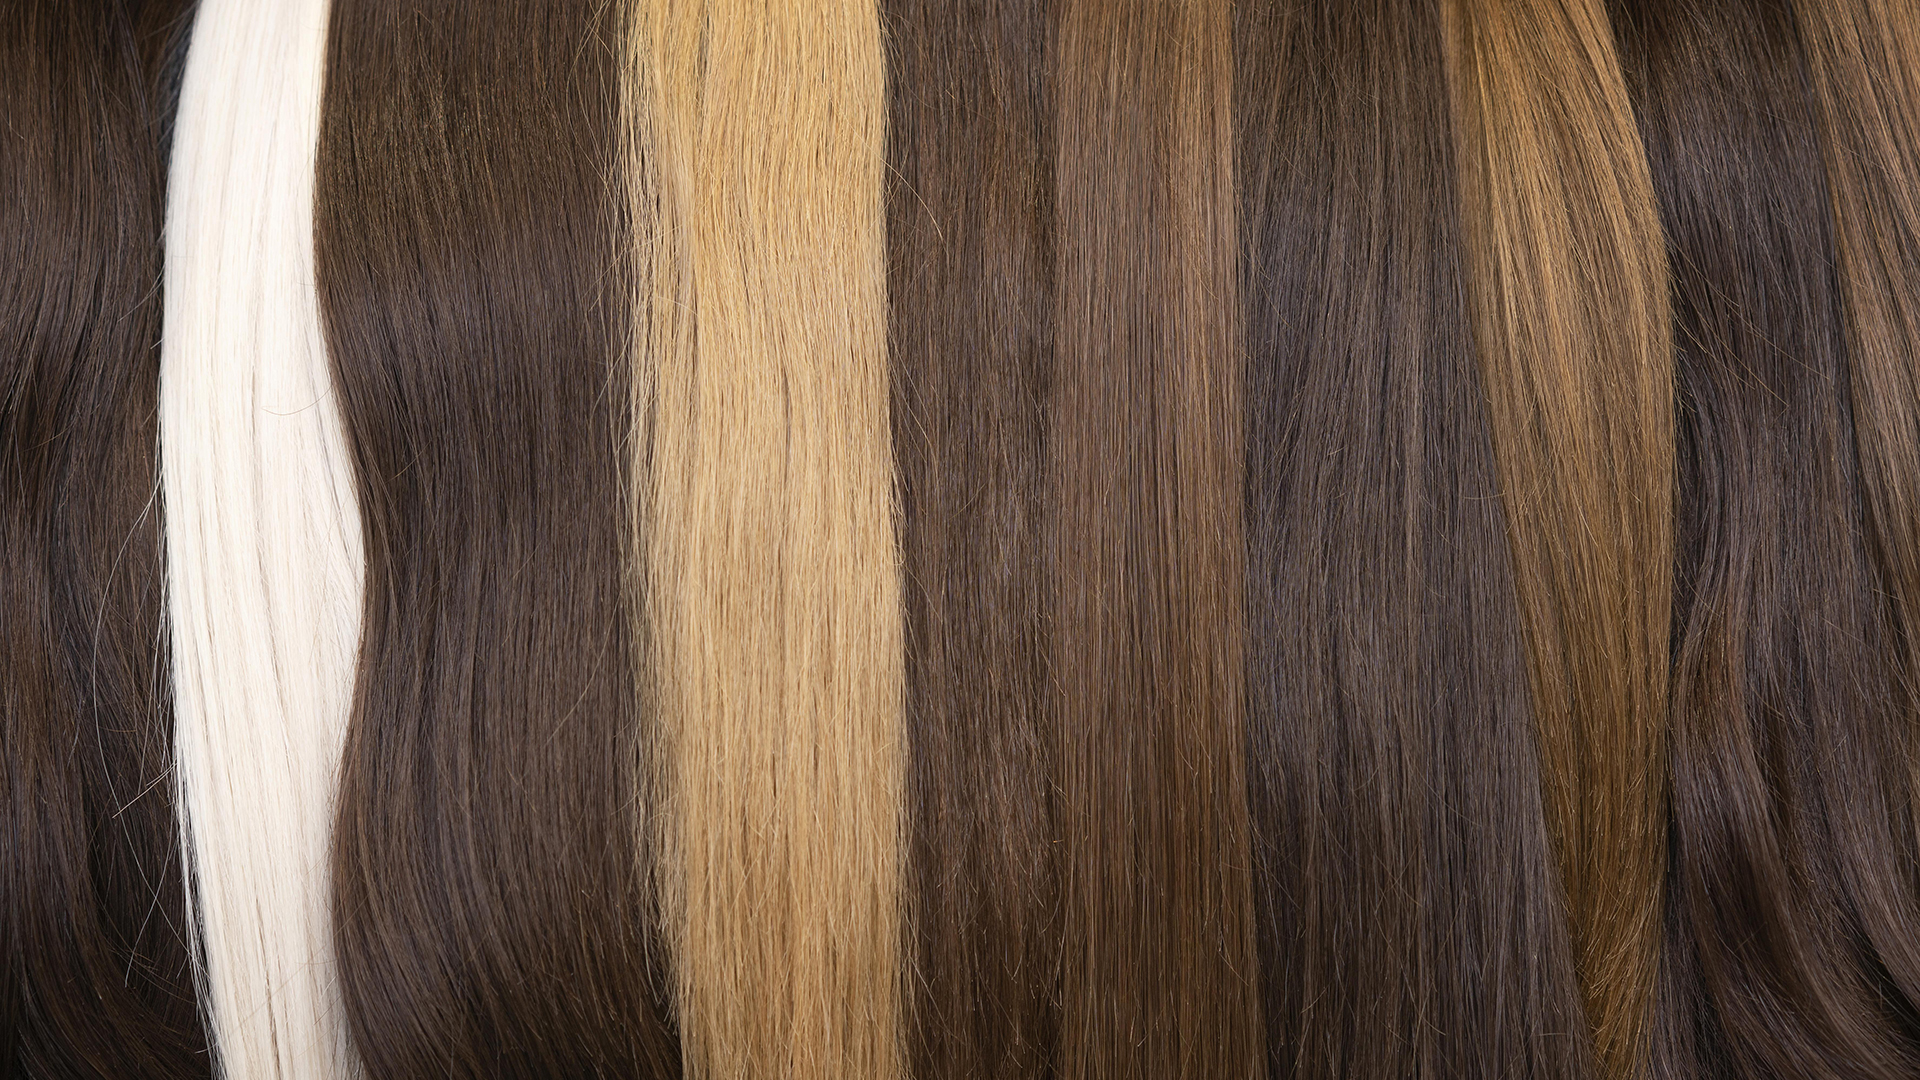 Senkrecht aneinander liegende Haarbündel in verschiedenen Farbtiefen: braun, dunkelblond, Mittelblond, hellblond und weiß.